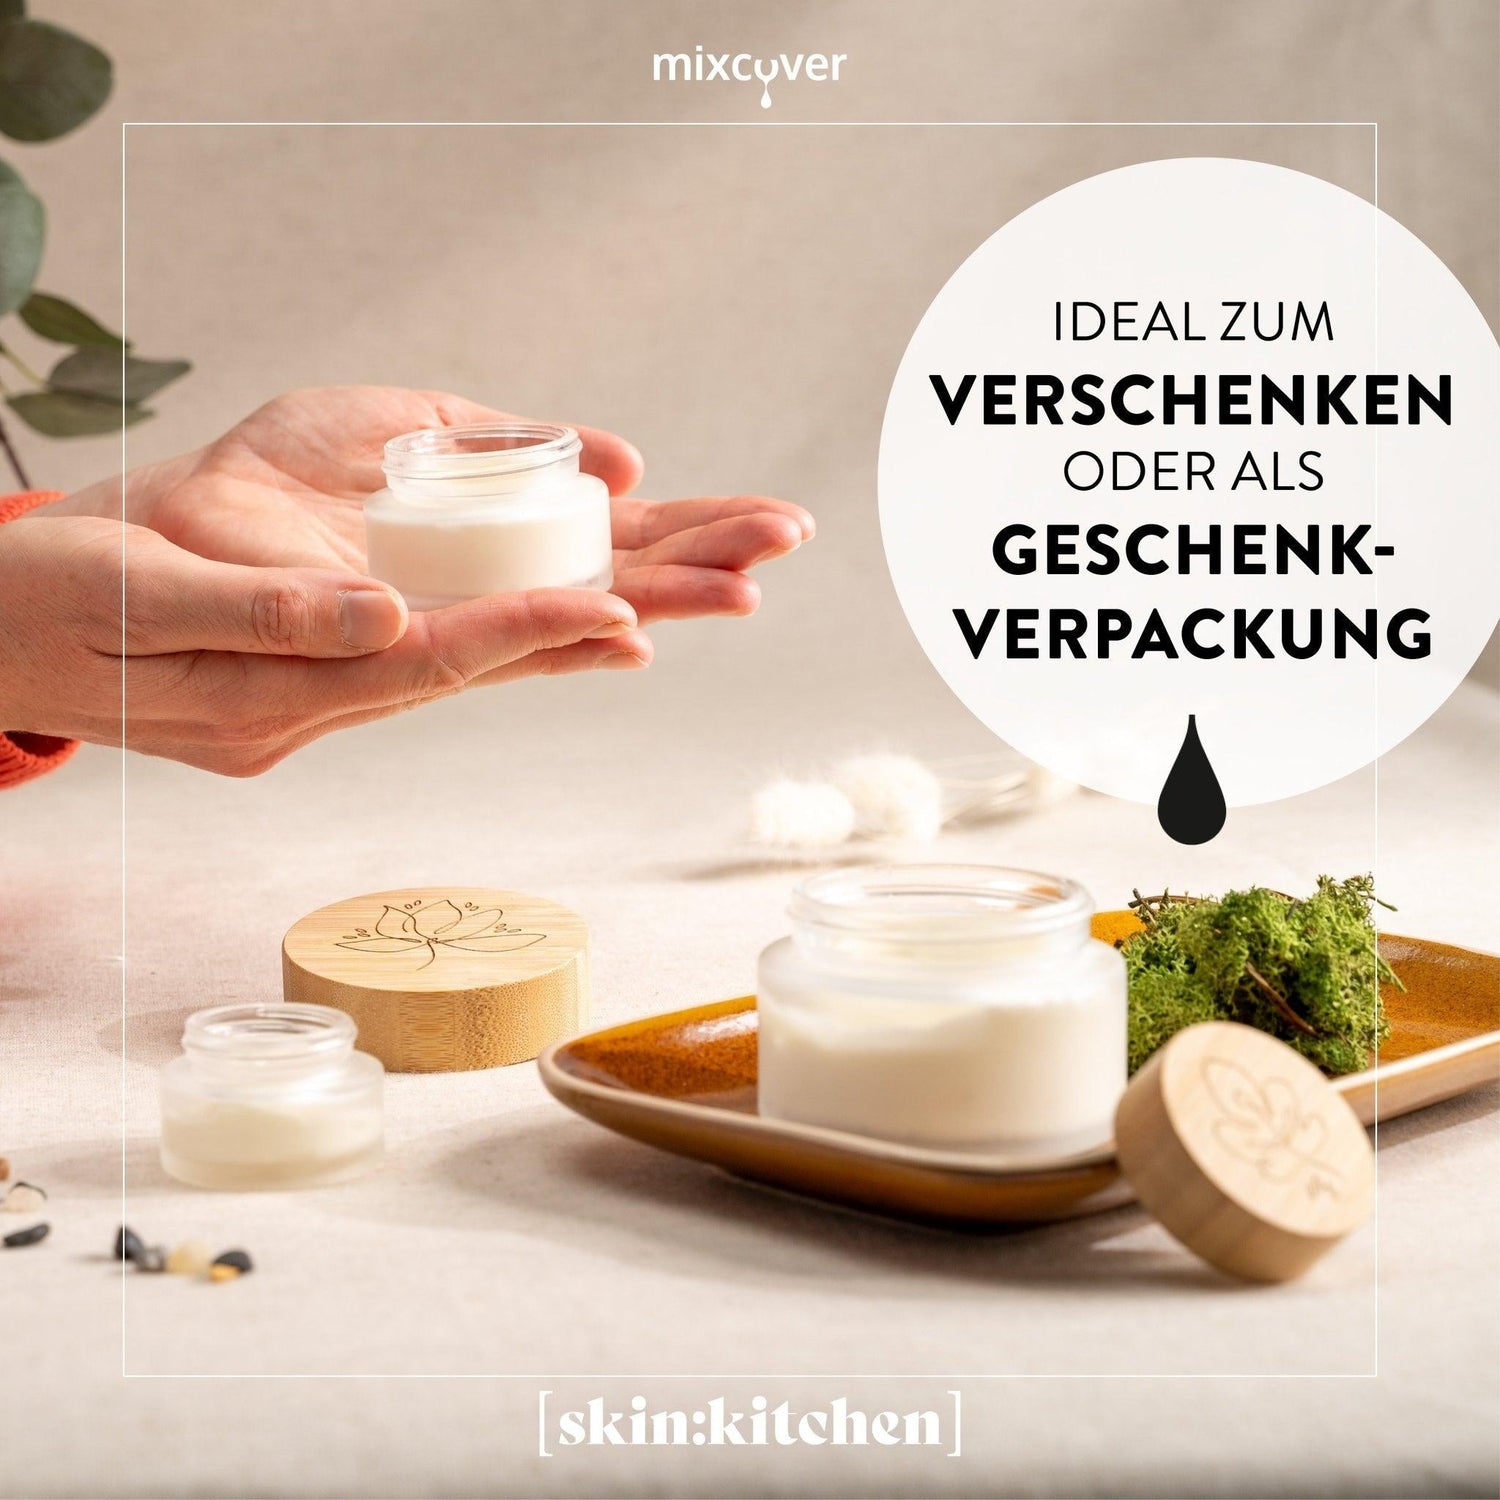 skin:kitchen Glastiegel mit Bambusdeckel & Gravur für selbstgemachte Kosmetik 3er Set 50g Frosted - Mixcover - skin:kitchen